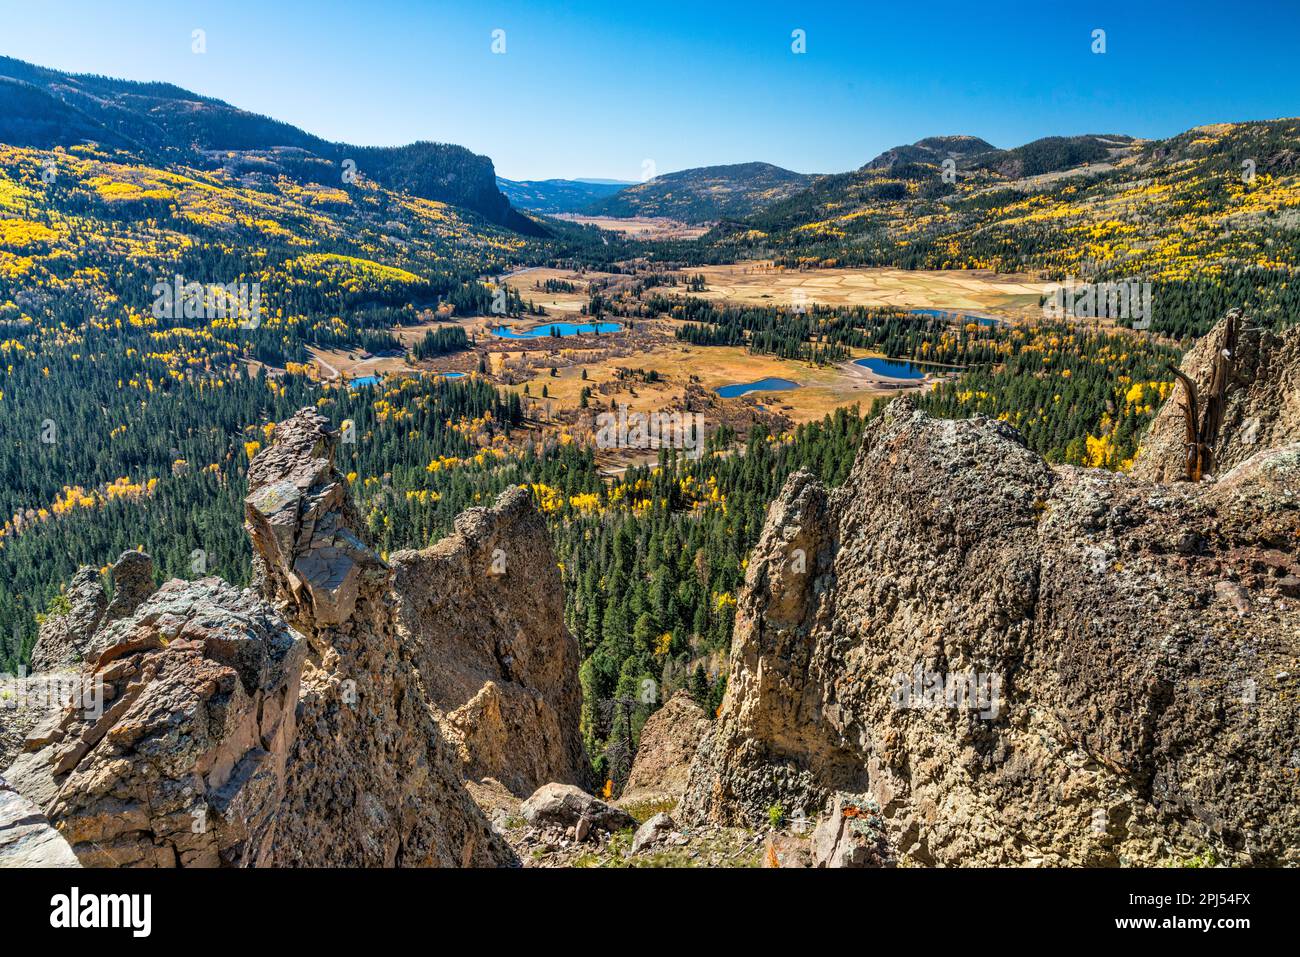 Vallée de la rivière San Juan, roches métamorphiques au point de vue sous le col de Wolf Creek, fin de l'automne, US 160, près de Pagosa Springs, montagnes San Juan, Colorado, États-Unis Banque D'Images